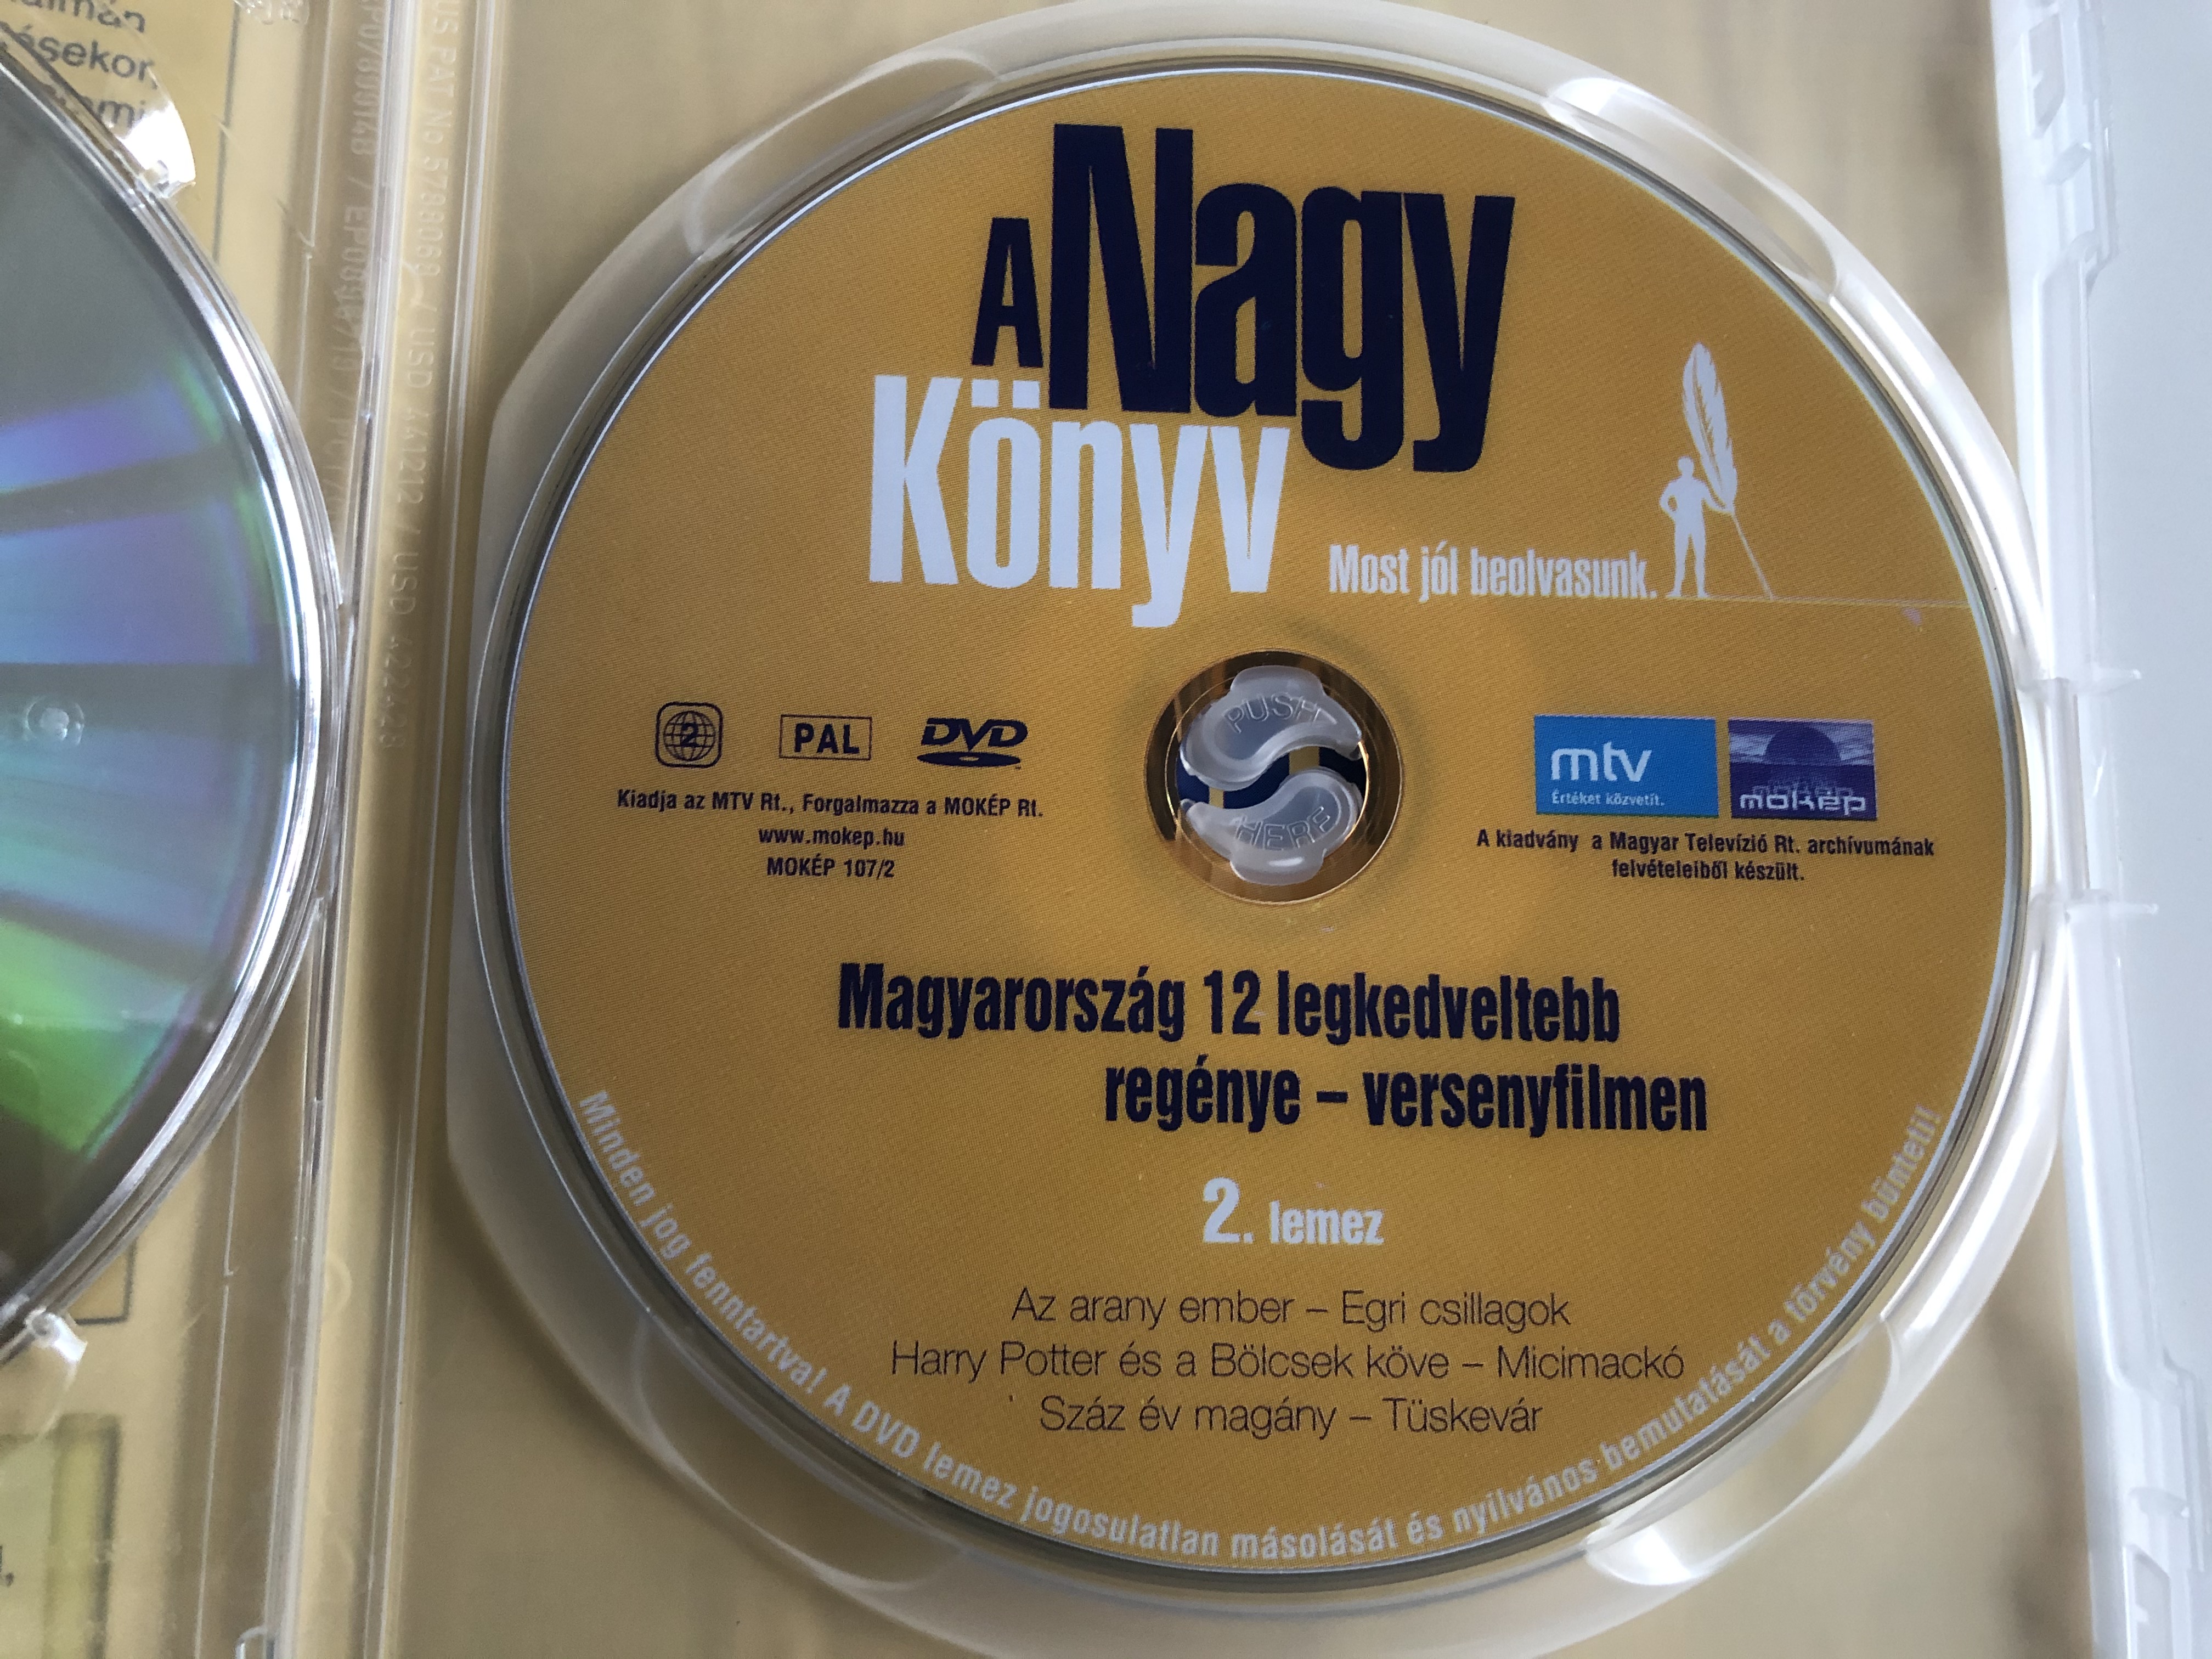 a-nagy-k-nyv-dvd-the-big-book-magyarorsz-g-12-legkedveltebb-reg-nye-versenyfilmen-3.jpg